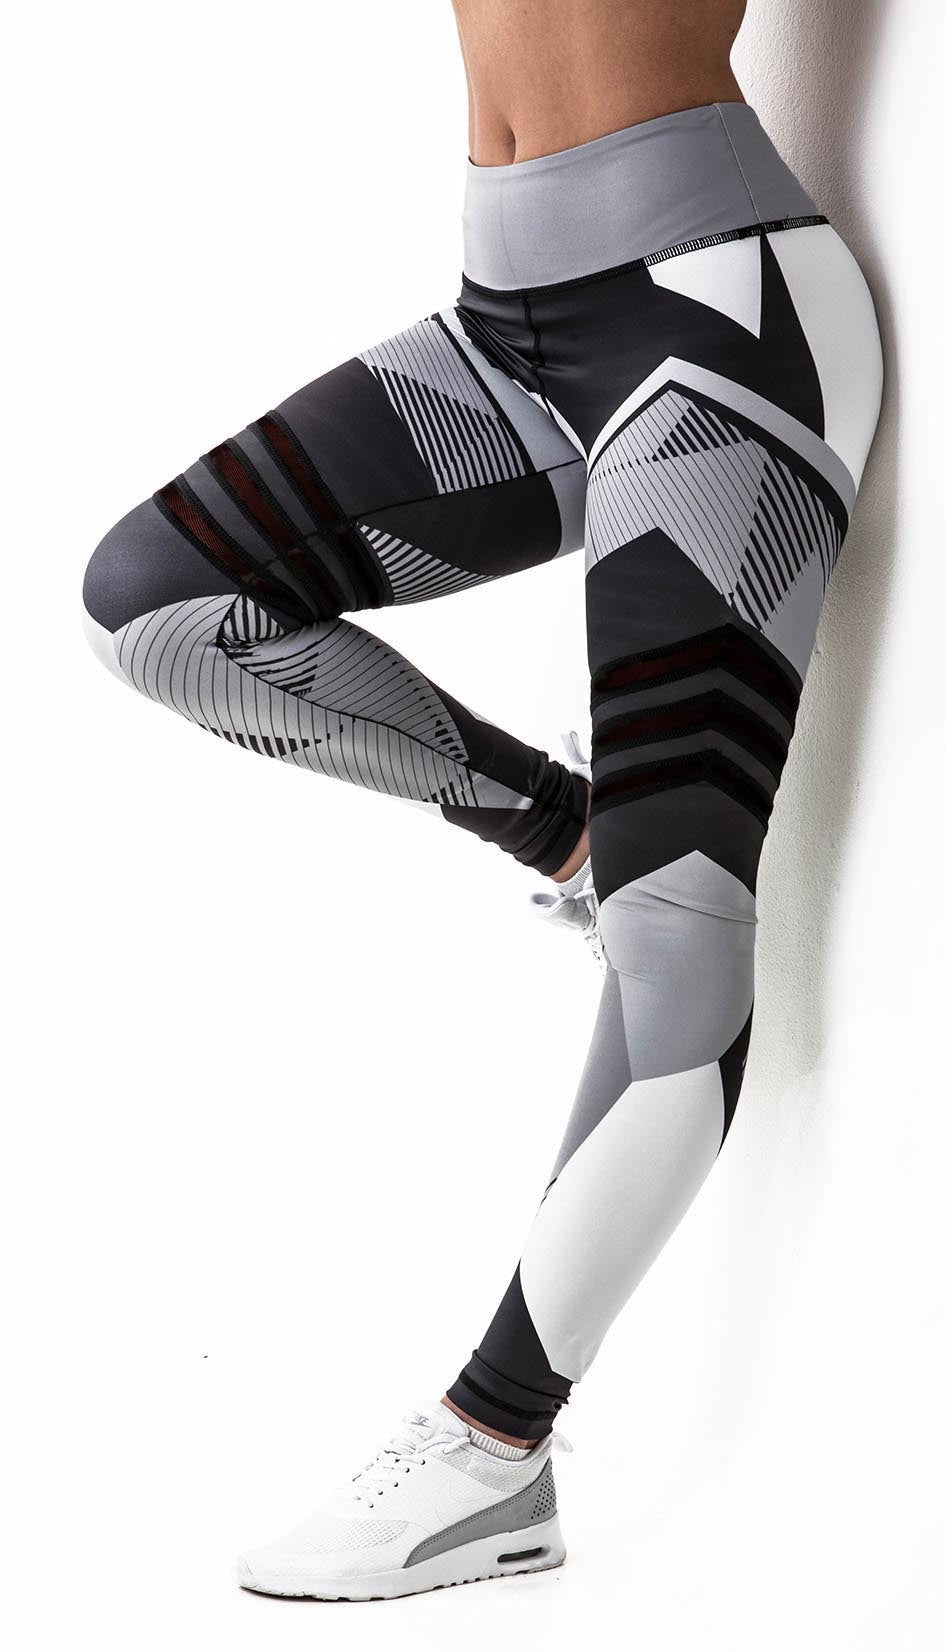 Yoga Pants High Waist Workout Printed Running Leggings